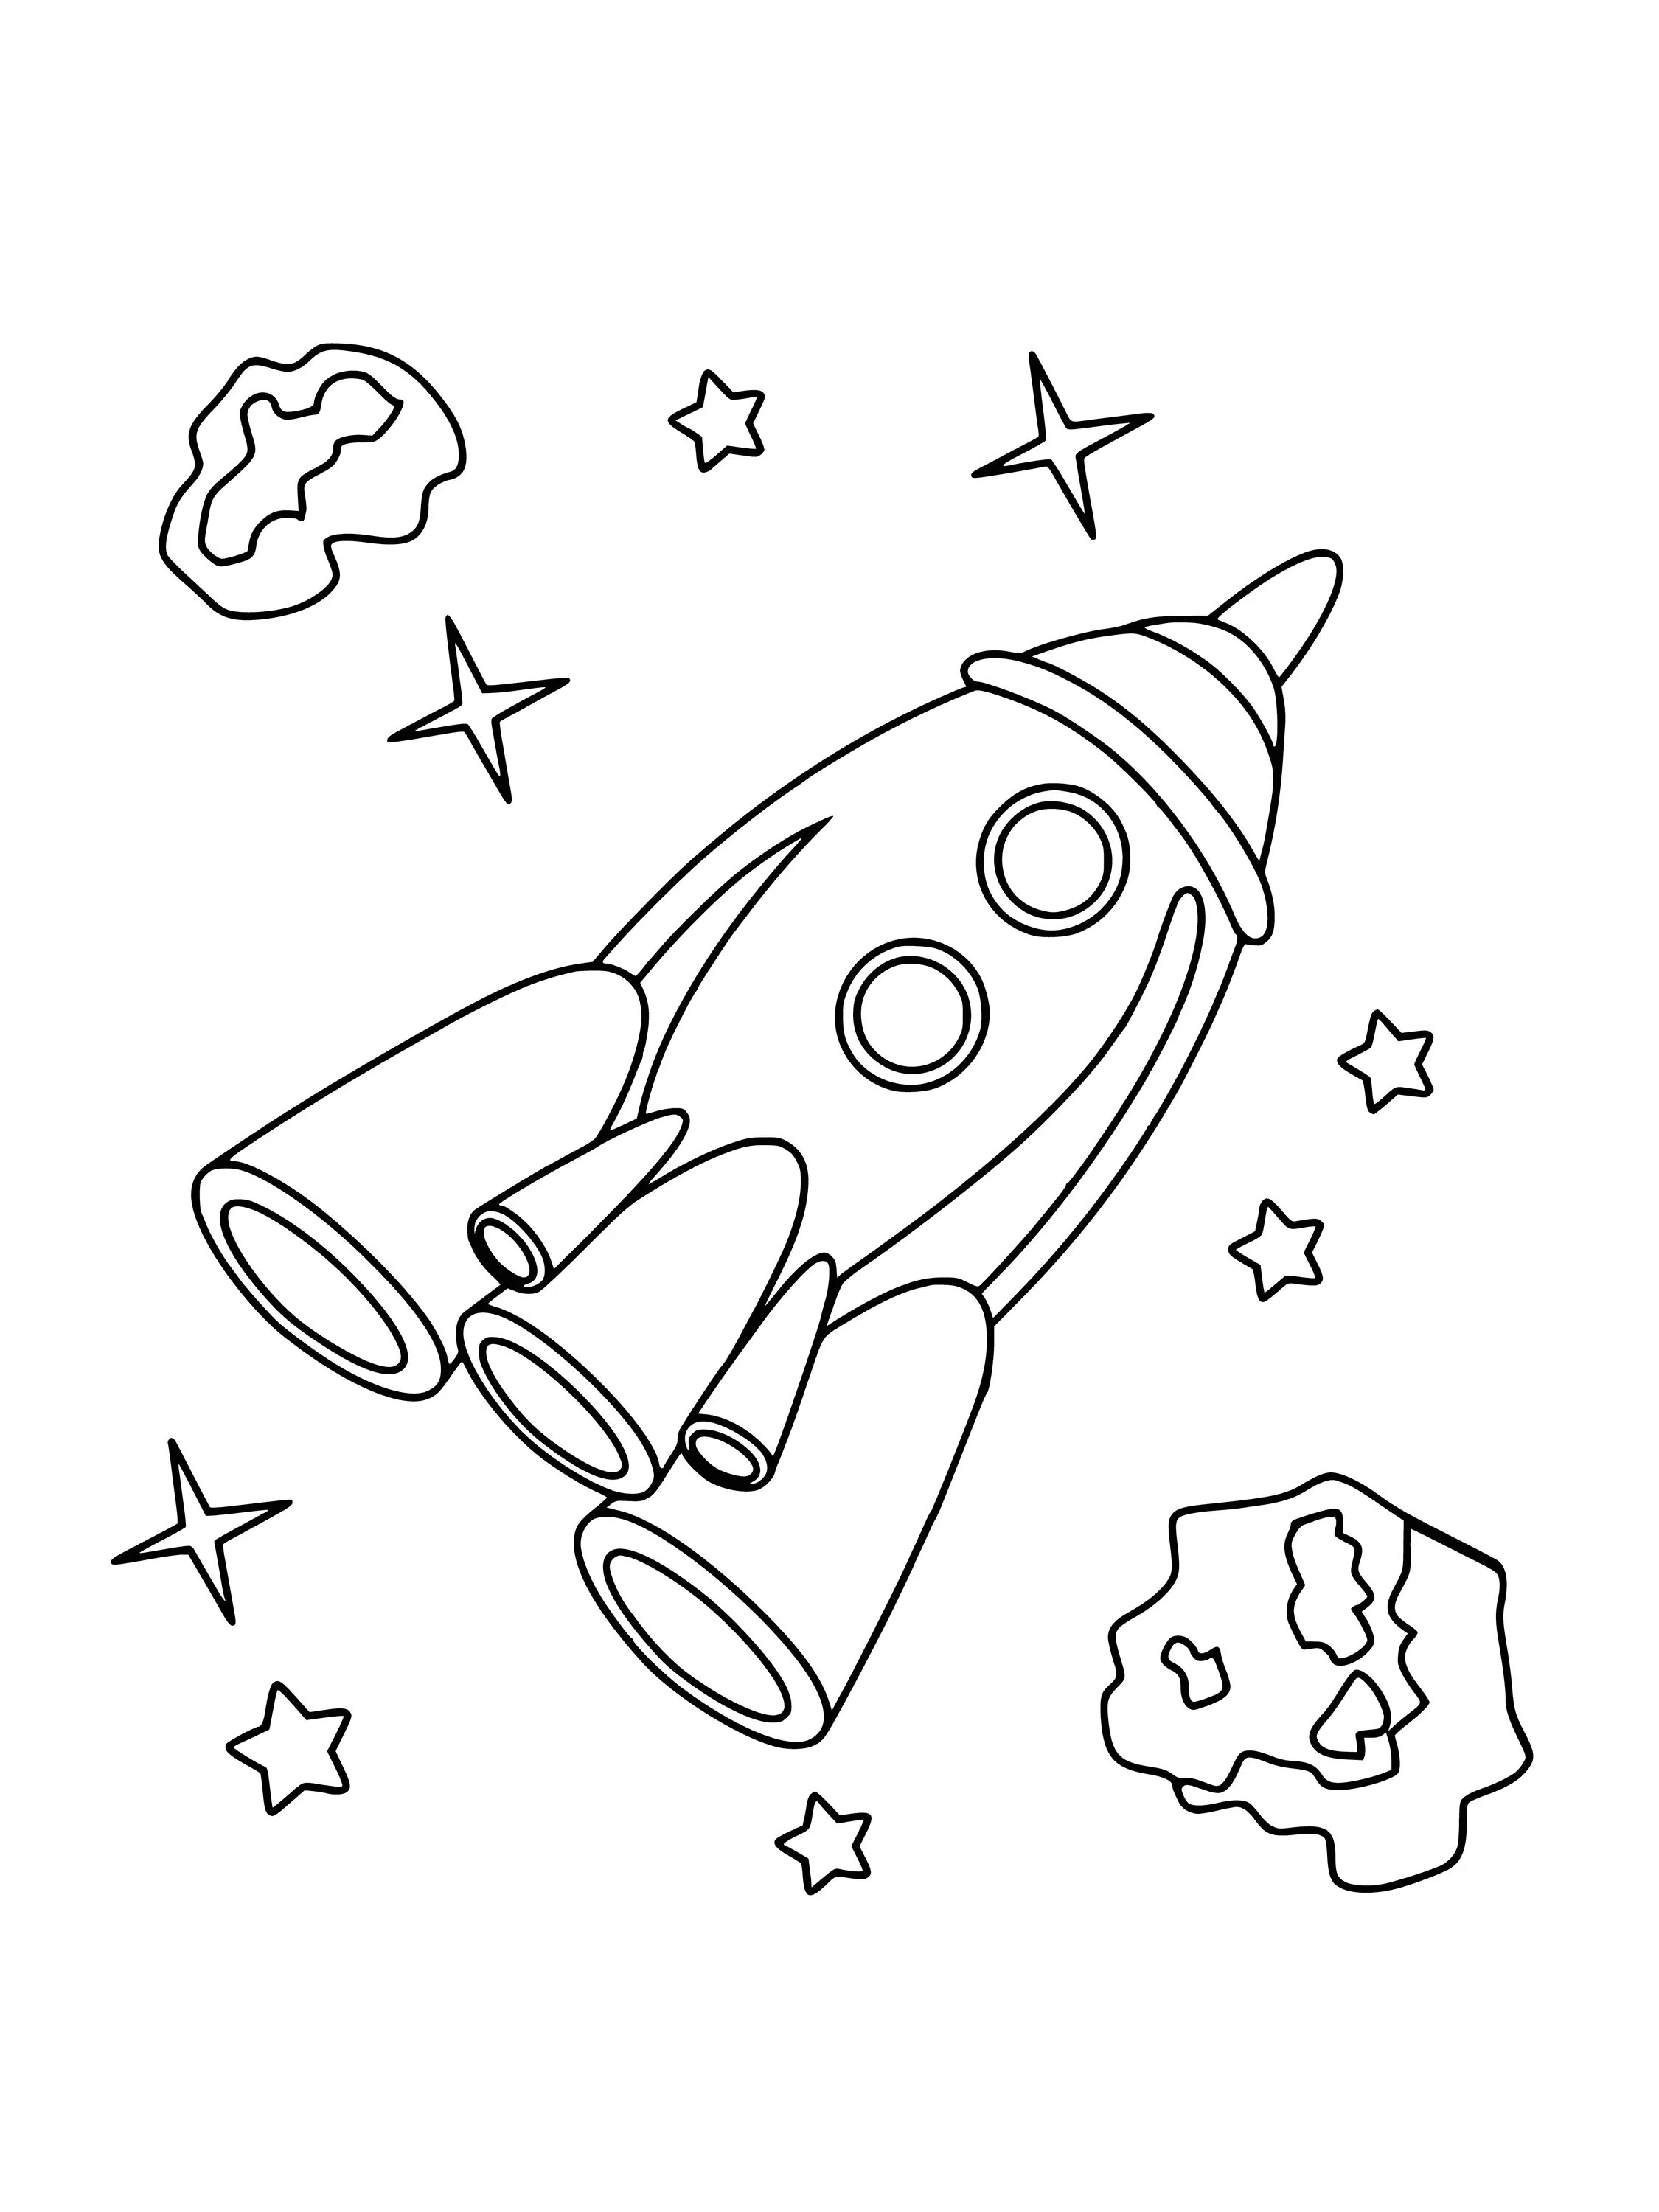 Ракета раскраска для детей 5 лет. Ракета раскраска. Космос раскраска для детей. Ракета раскраска для детей. Раскраска для мальчиков ракета.